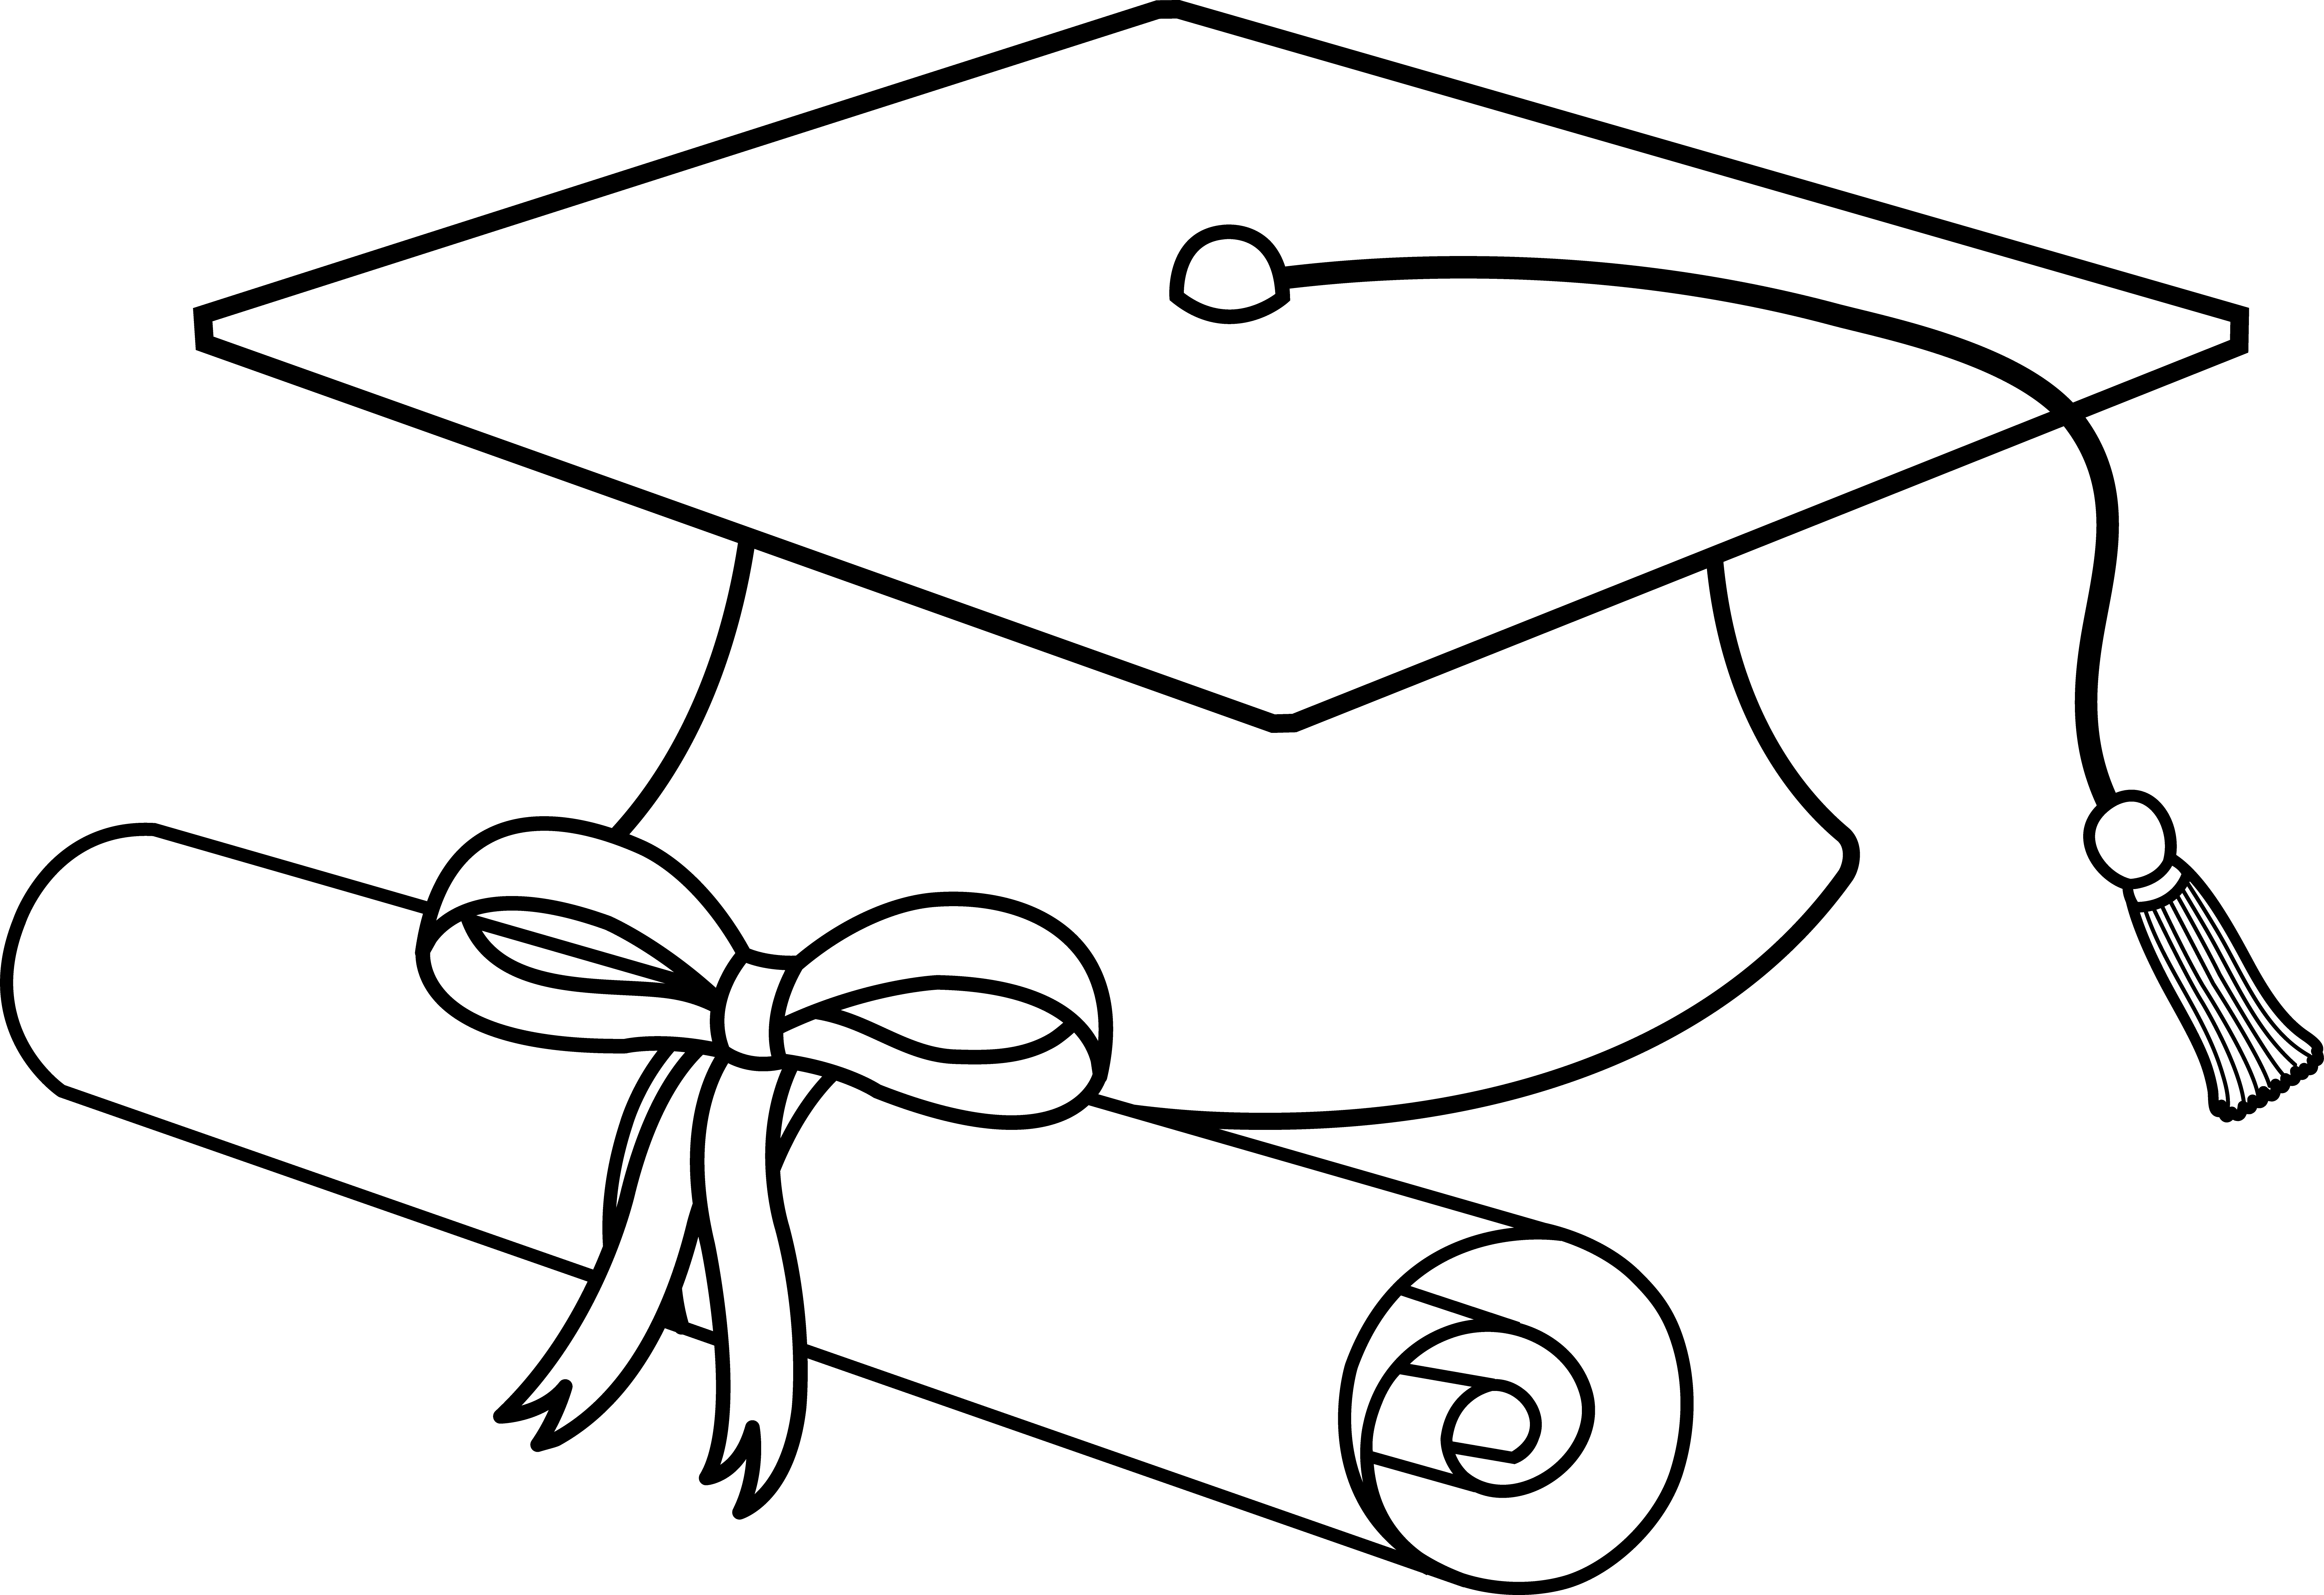 Flying caps clip art. Hand clipart graduation